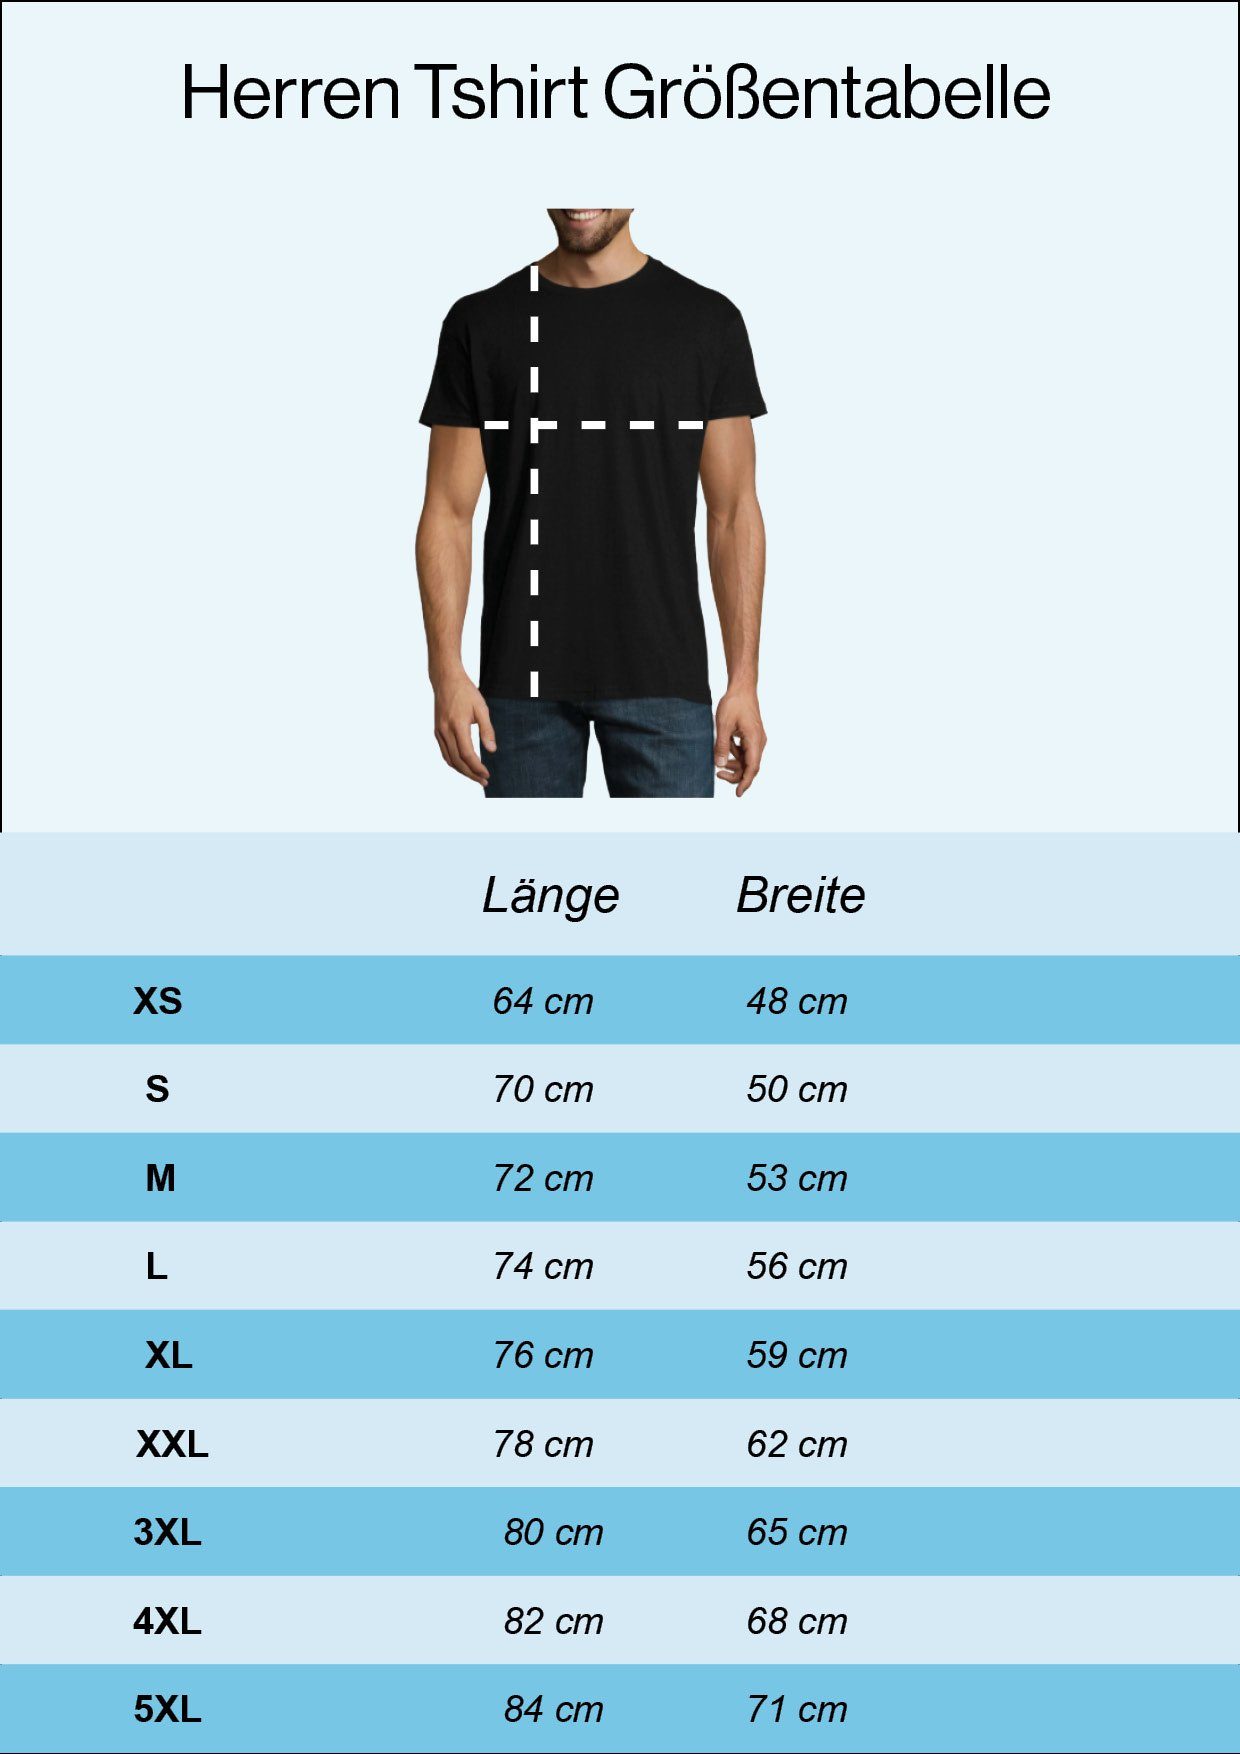 Starters Shirt mit trendigem Designz Navyblau T-Shirt Frontaufdruck Herren Youth